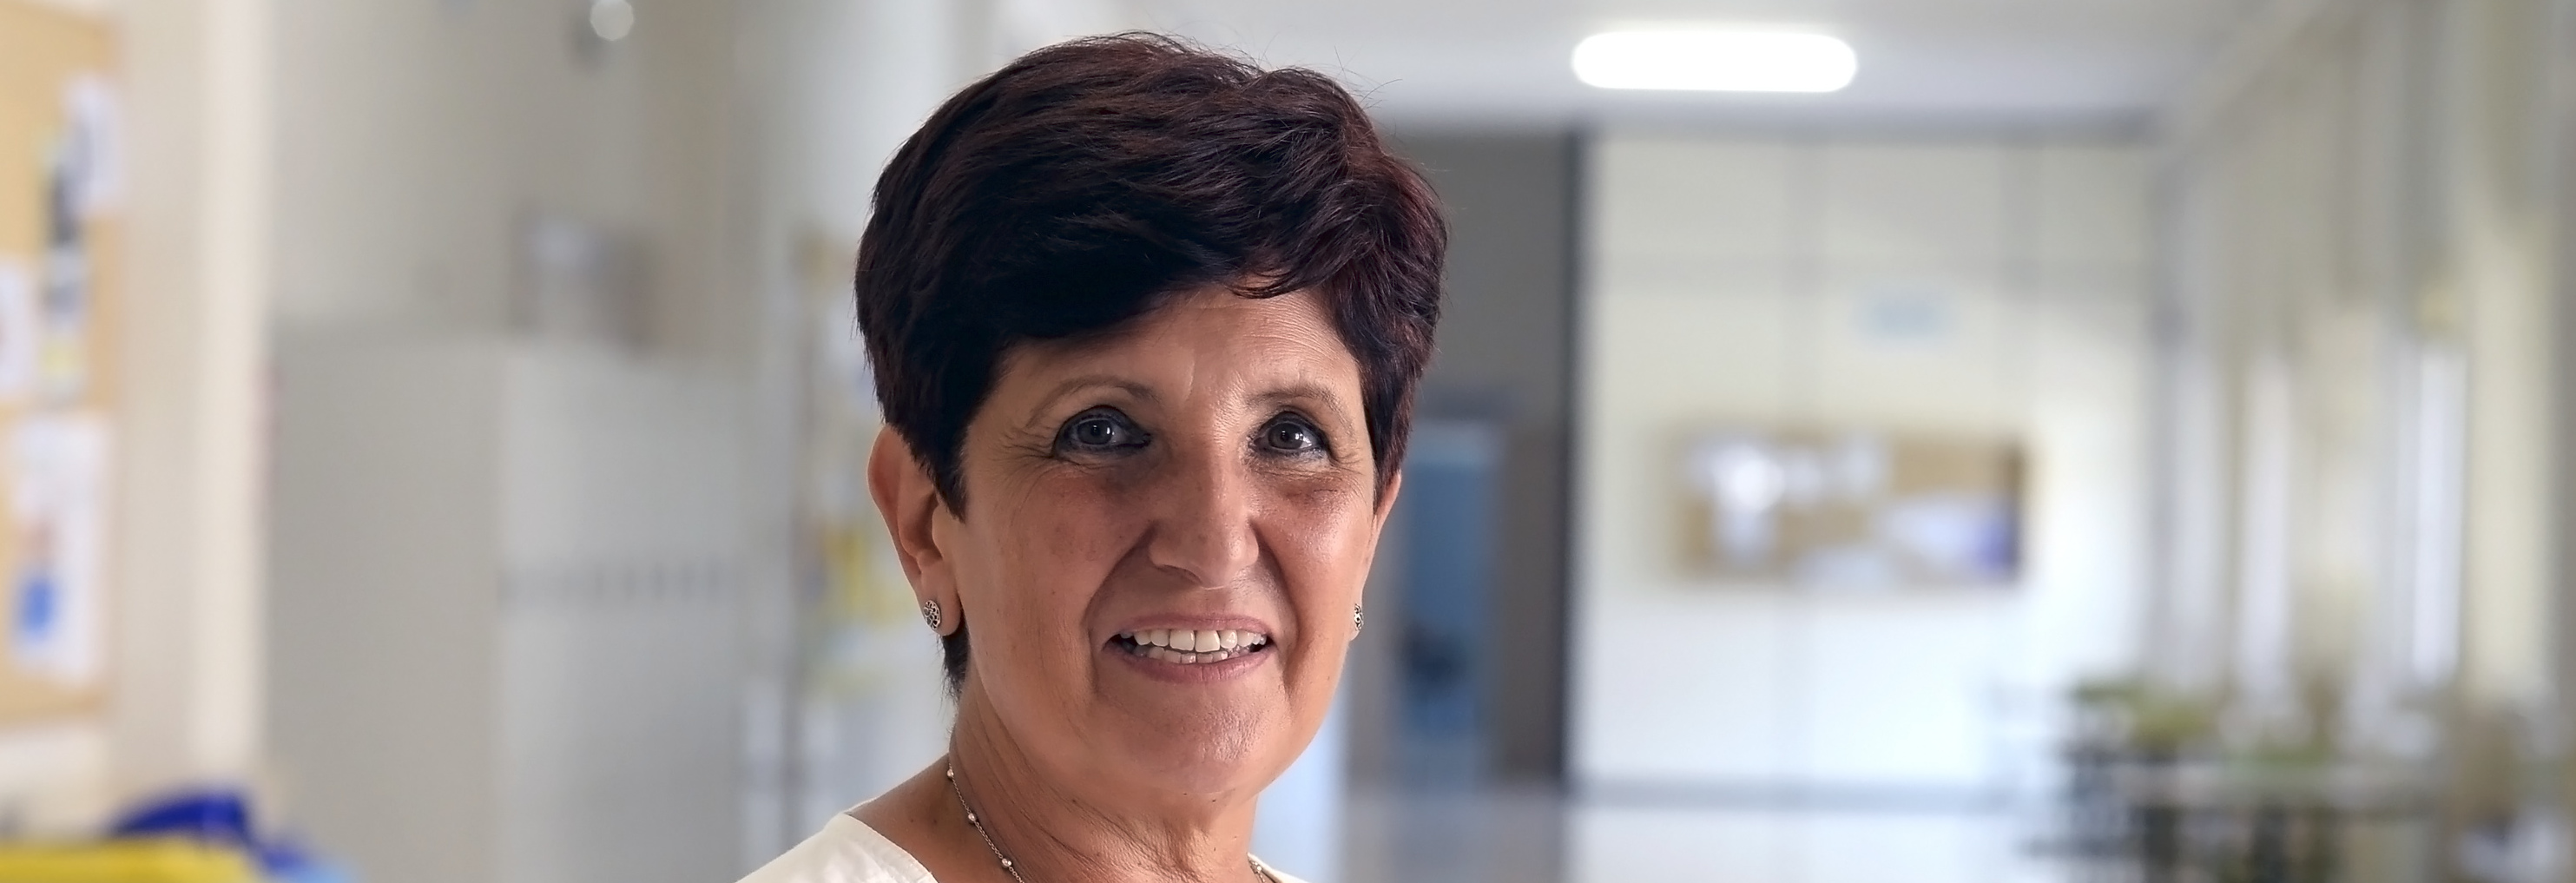 Carmen Robles toma posesión como decana de la facultad de Medicina